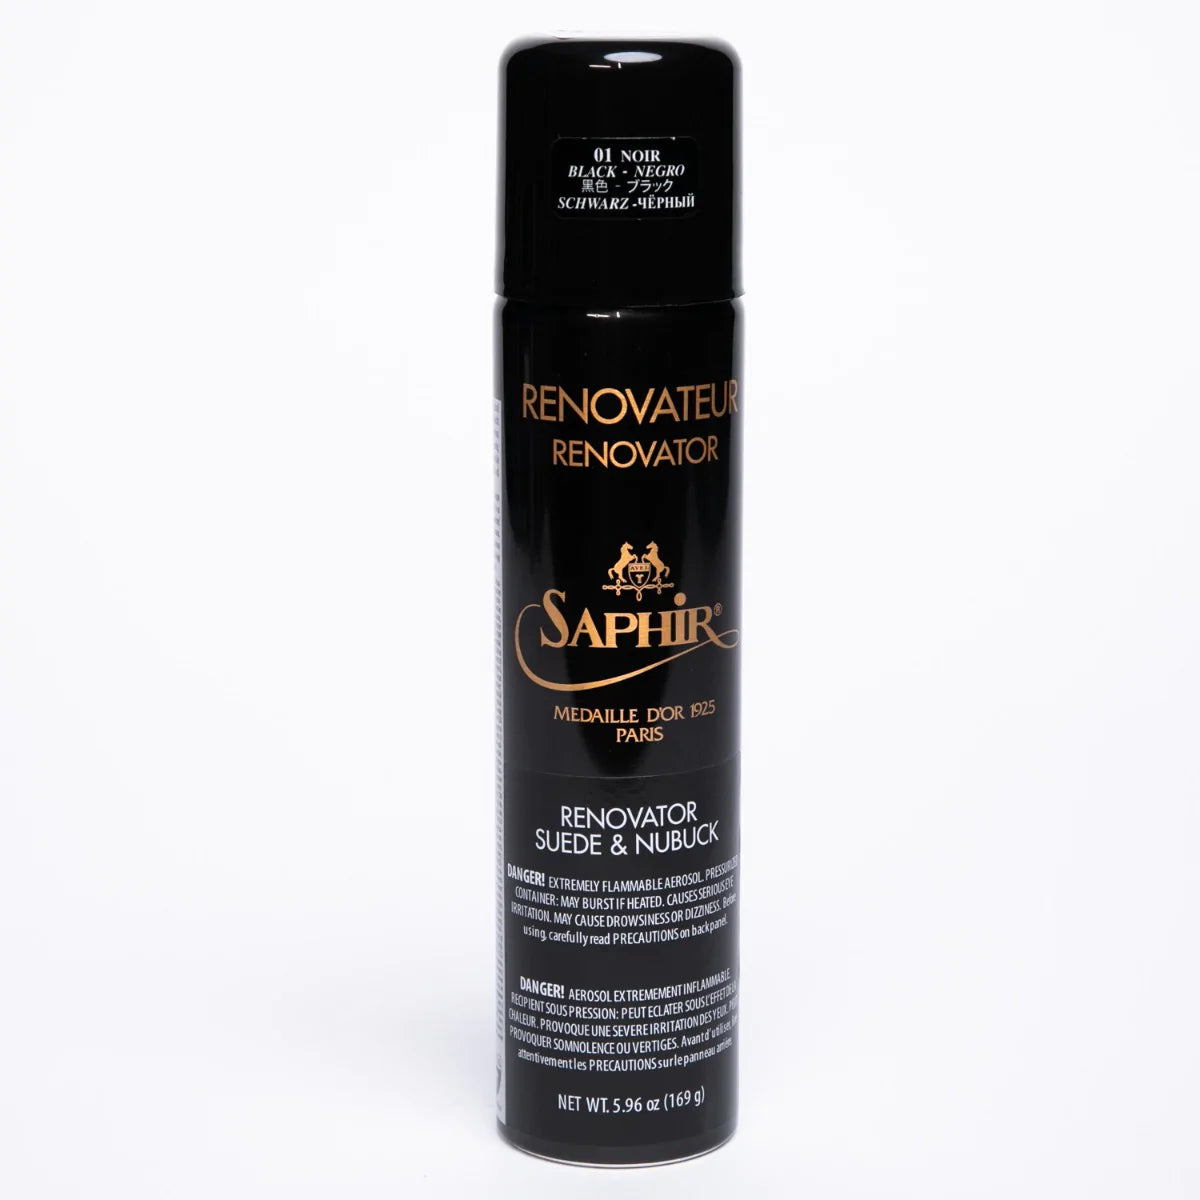 COLOR BLACK Saphir Renovateur Suede & Nubuck Conditioning Spray